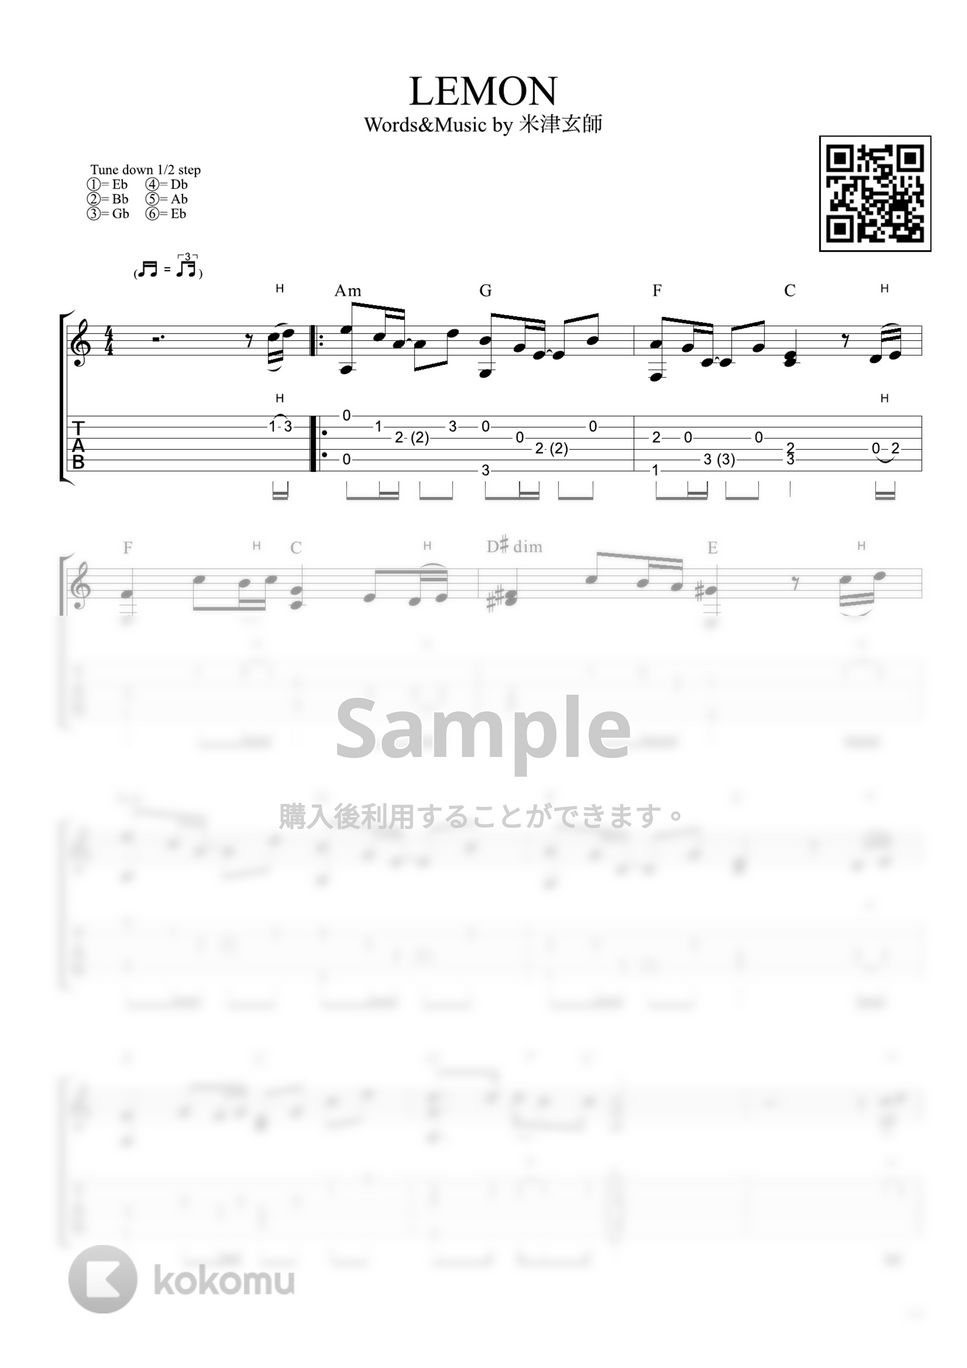 米津玄師 - Lemon (ソロギター / 初級〜中級) by Strings Guitar School